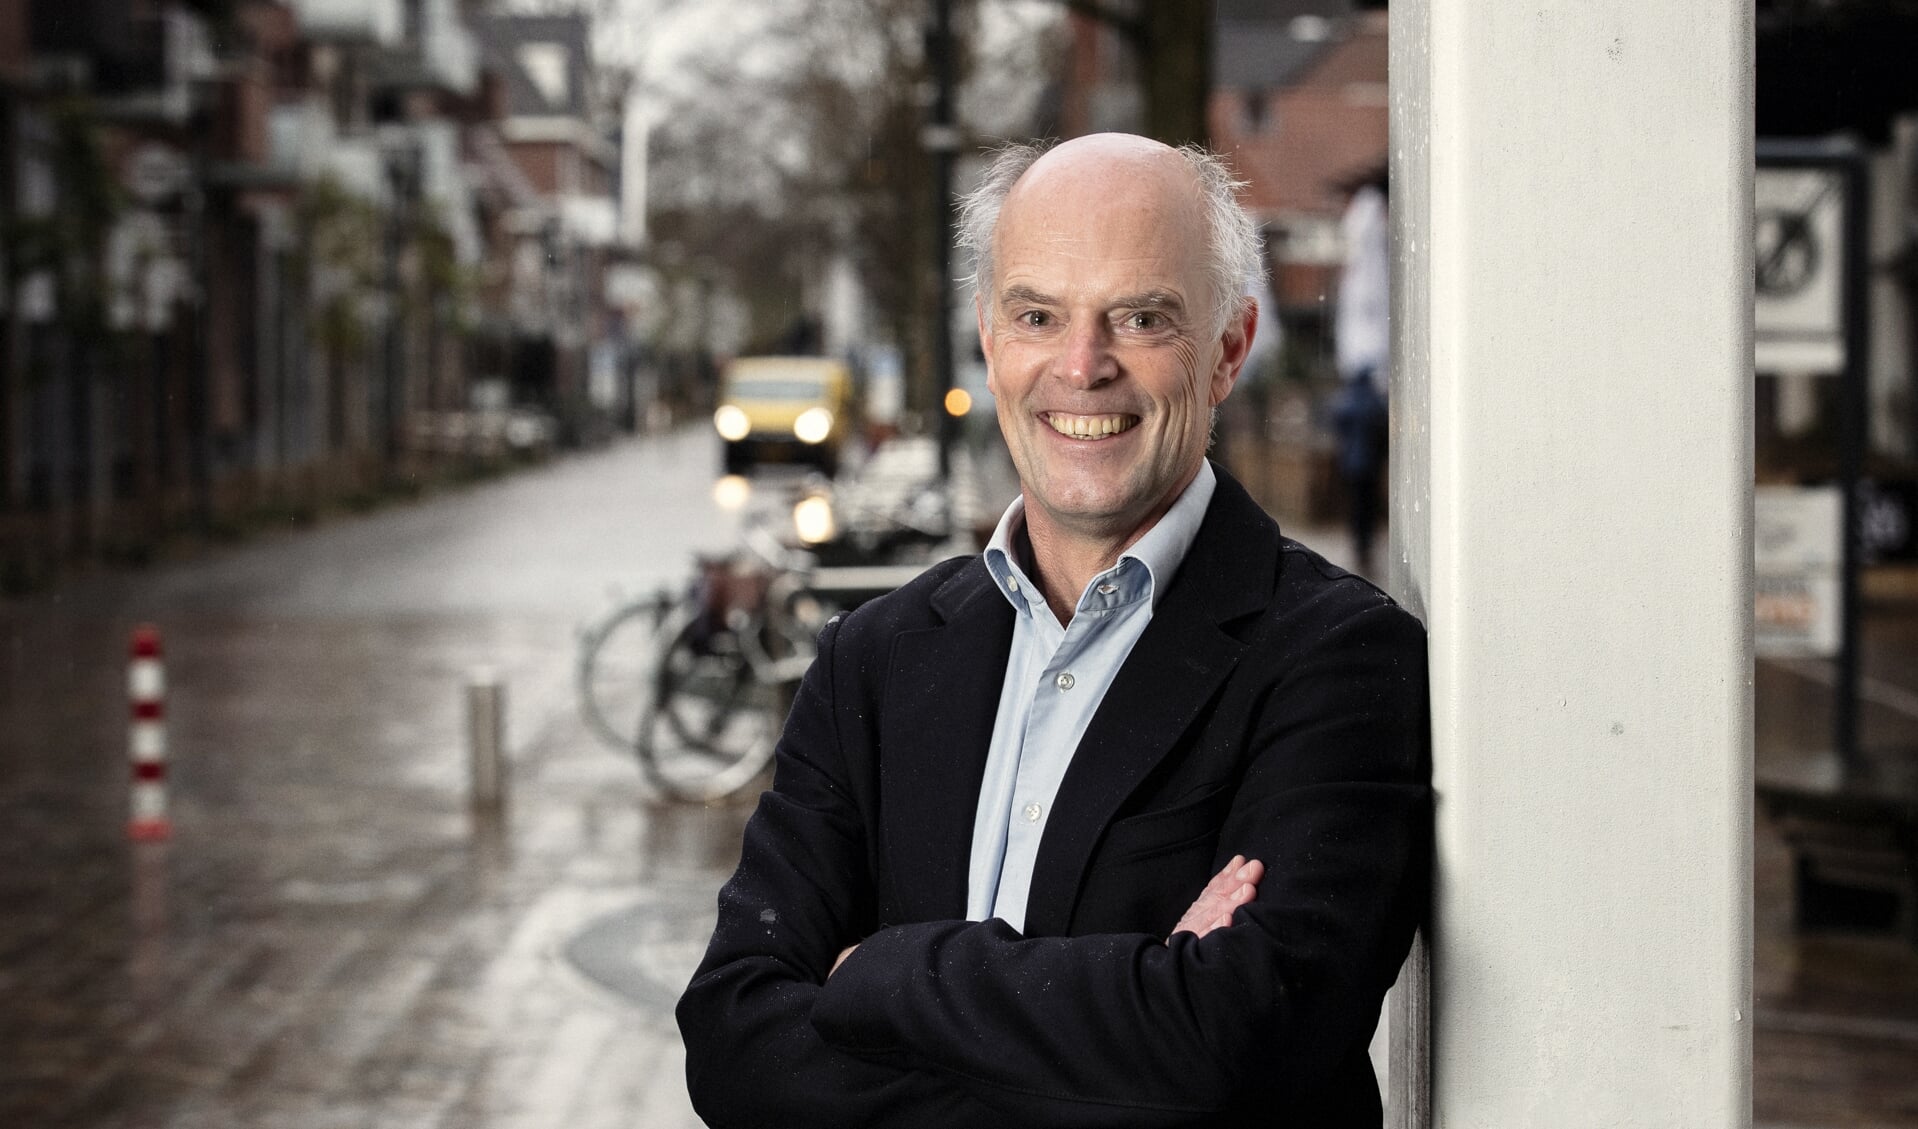 Voorzitter van Veenendaal-Veenendaal André Homma op een archieffoto